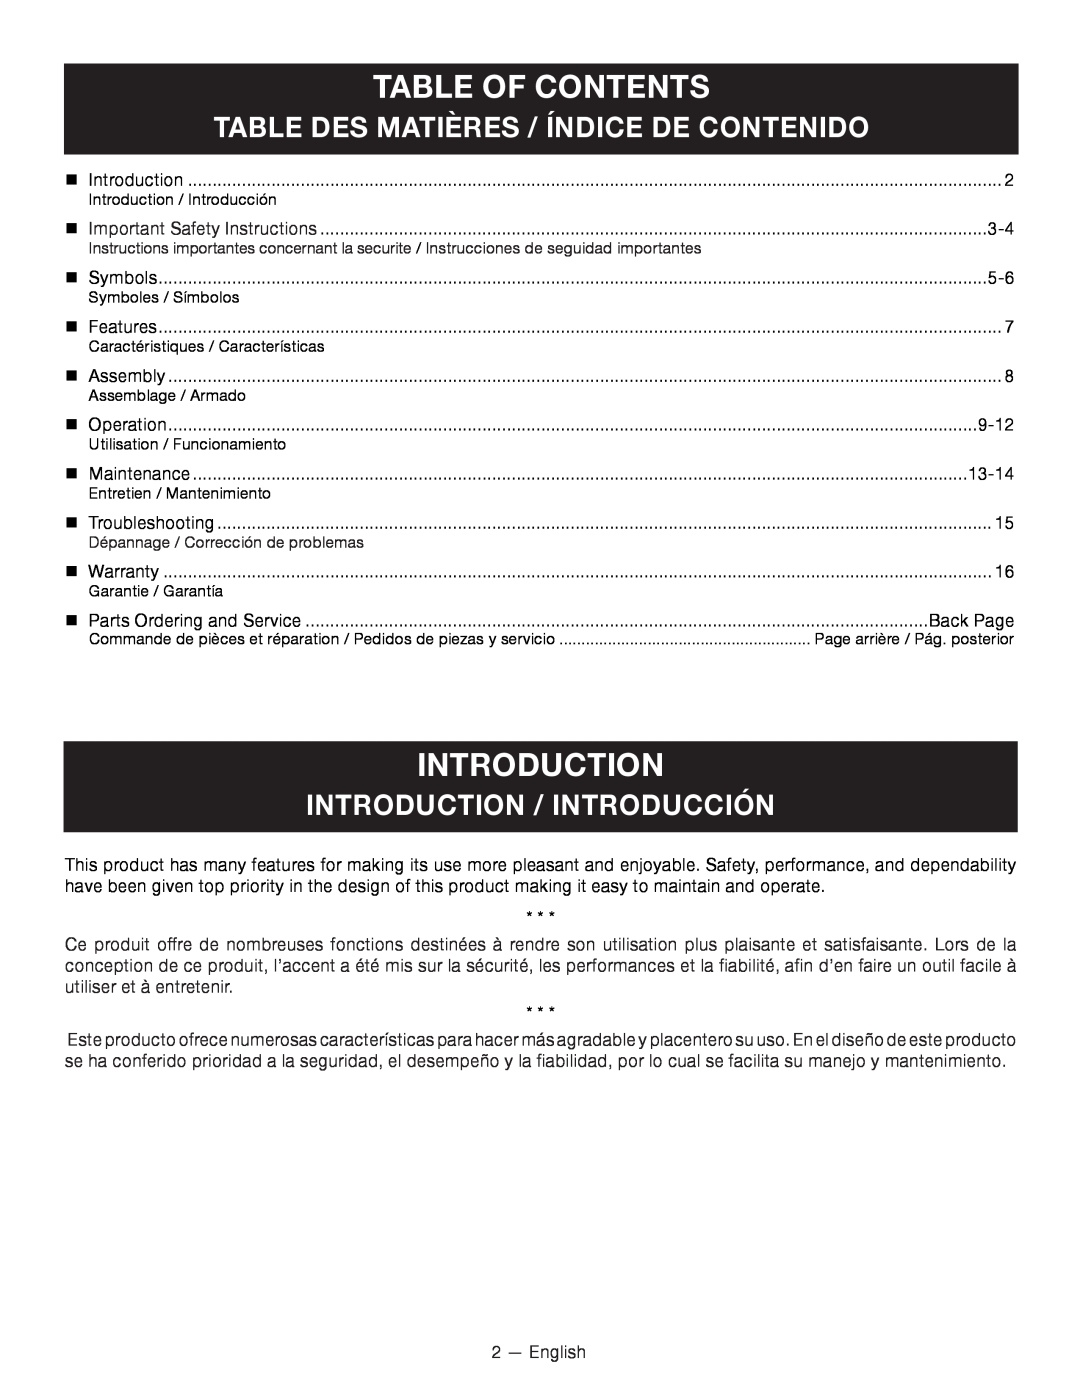 Ryobi P2000 Table Of Contents, introduction, Table Des Matières / Índice De Contenido, Introduction / Introducción 